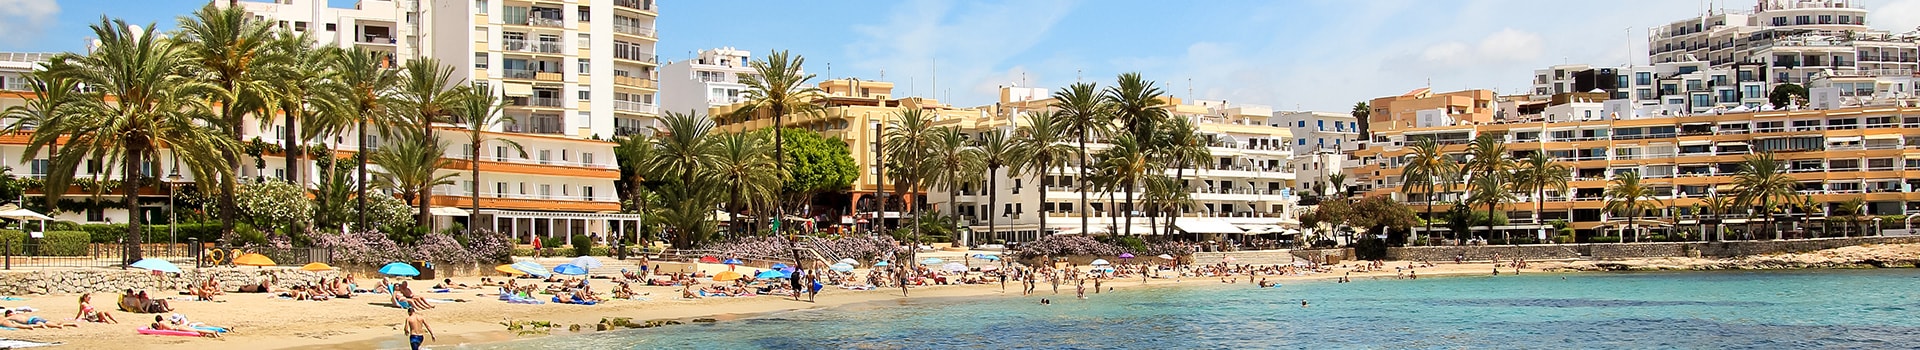 Biglietti da Nave da Mahón (Minorca) a Ibiza